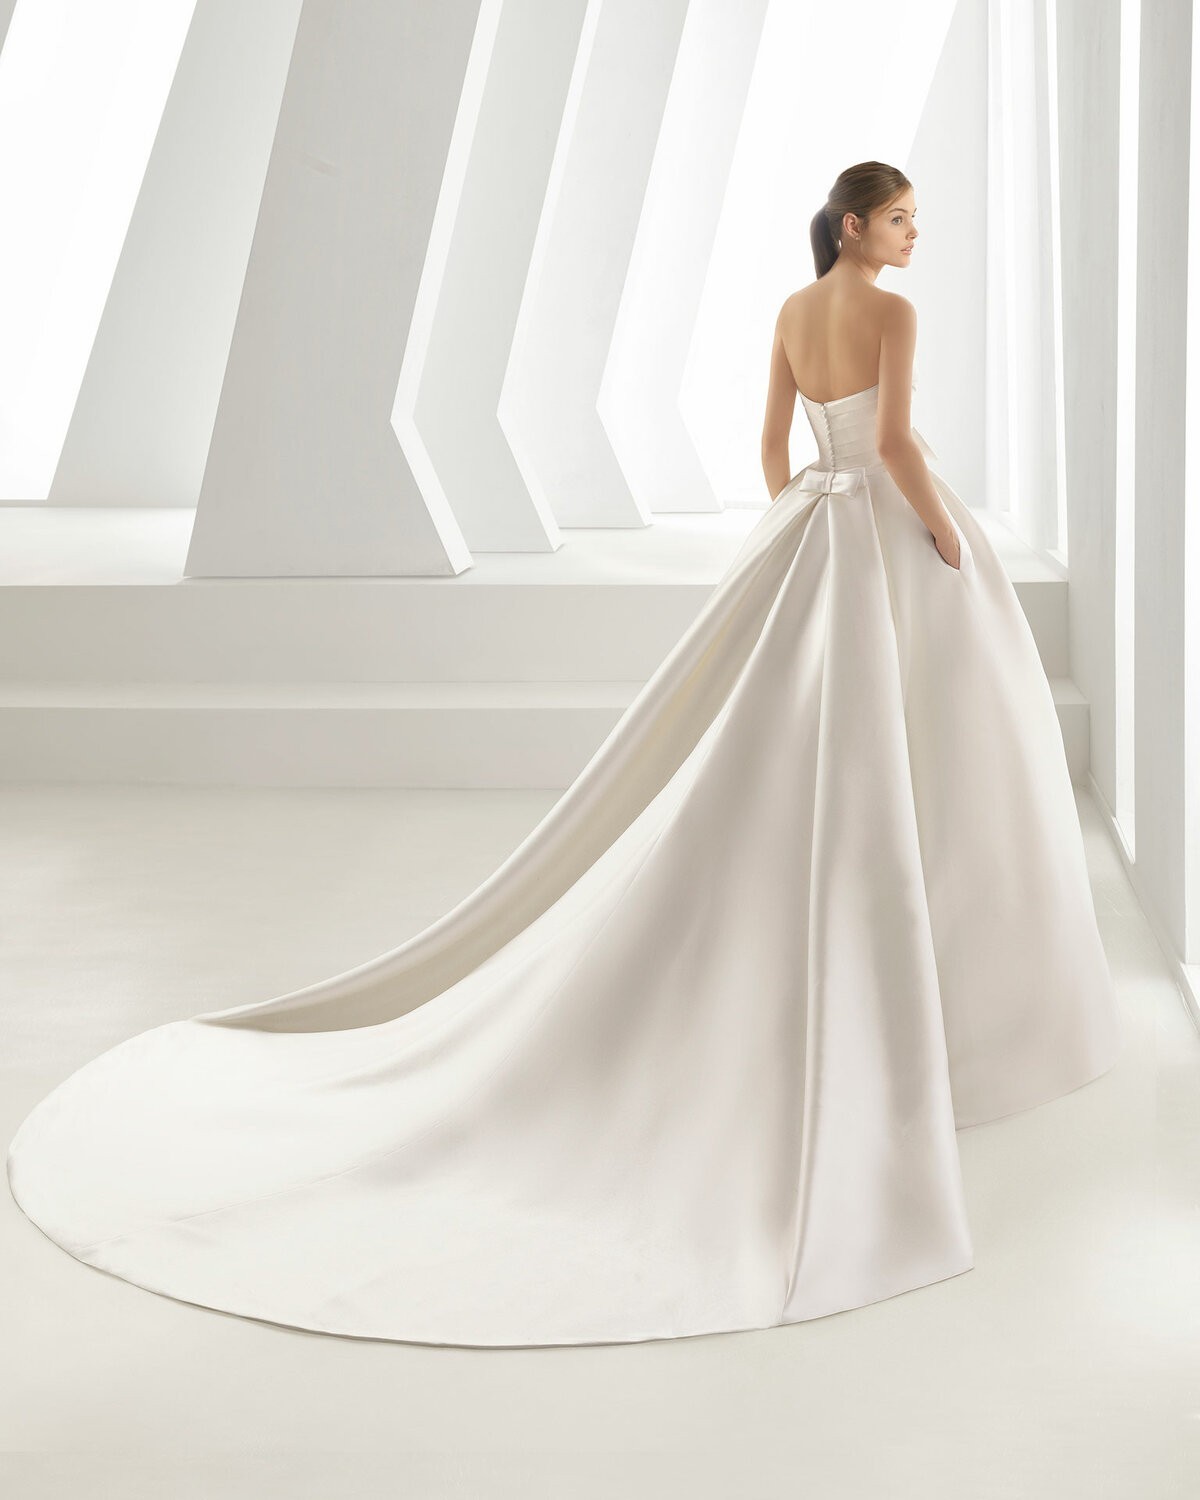 ENCANTO - abito da sposa collezione 2020 - Rosa Clarà